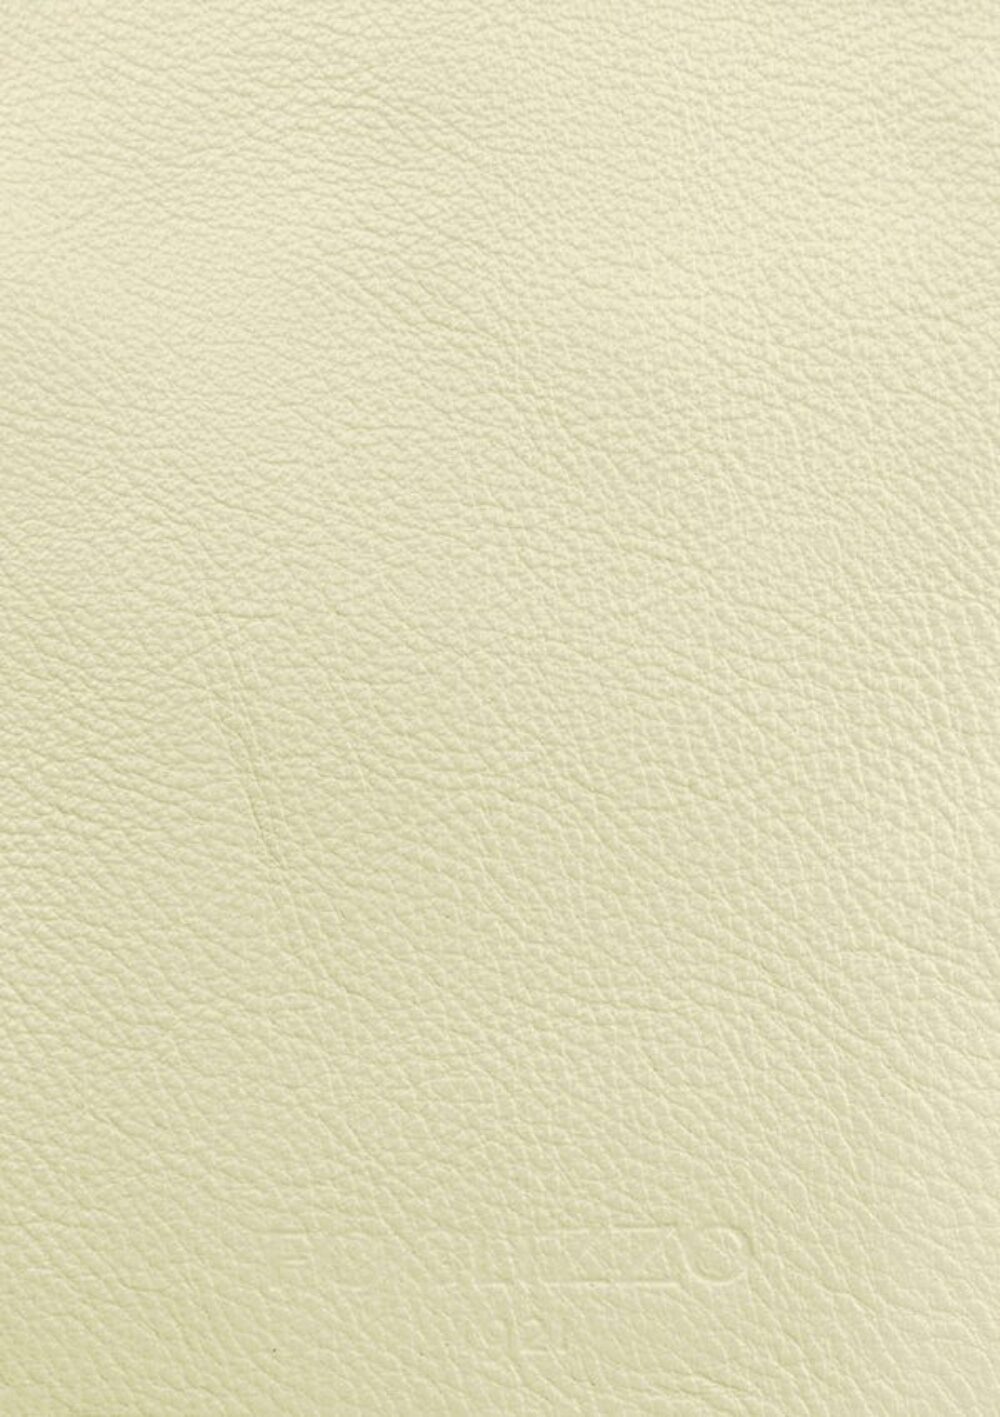 Diseño de lujo y alfombras de alta gama hechas a medida • Yellow Pearl White Jade